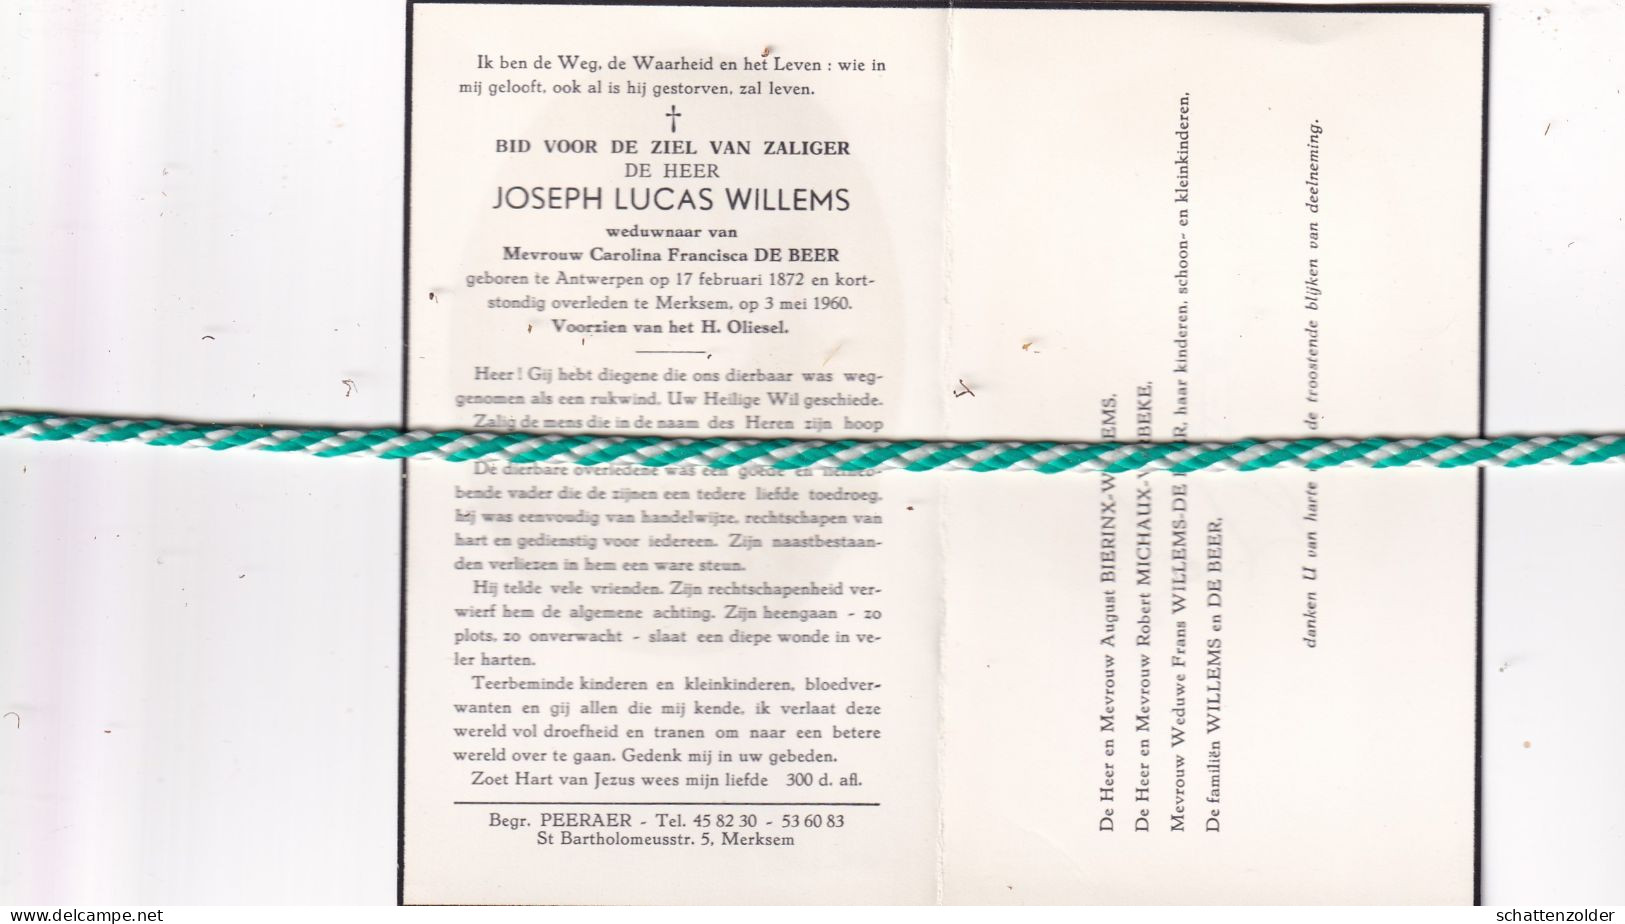 Joseph Lucas Willems-De Beer, Antwerpen 1872, Merksem 1960 - Obituary Notices